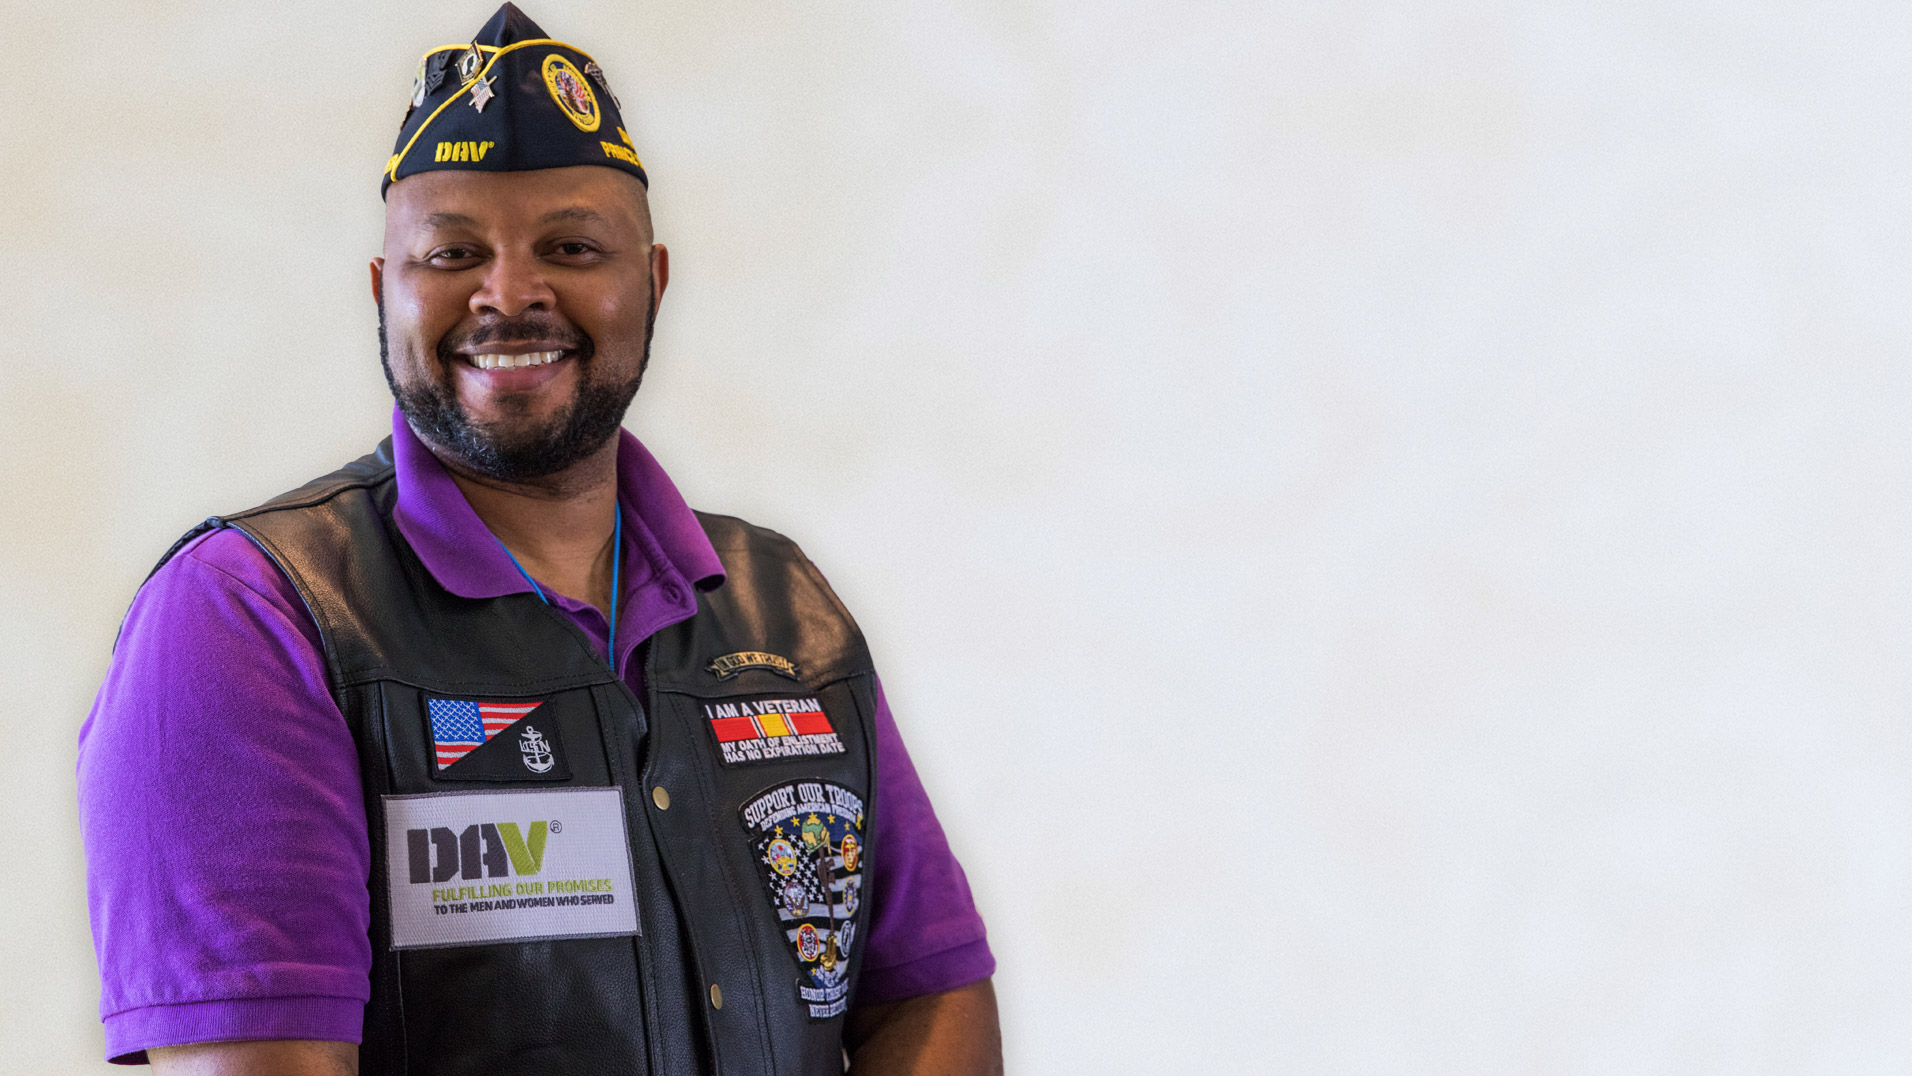 Smiling Veteran wearing Disabled American Veteran vest and hat